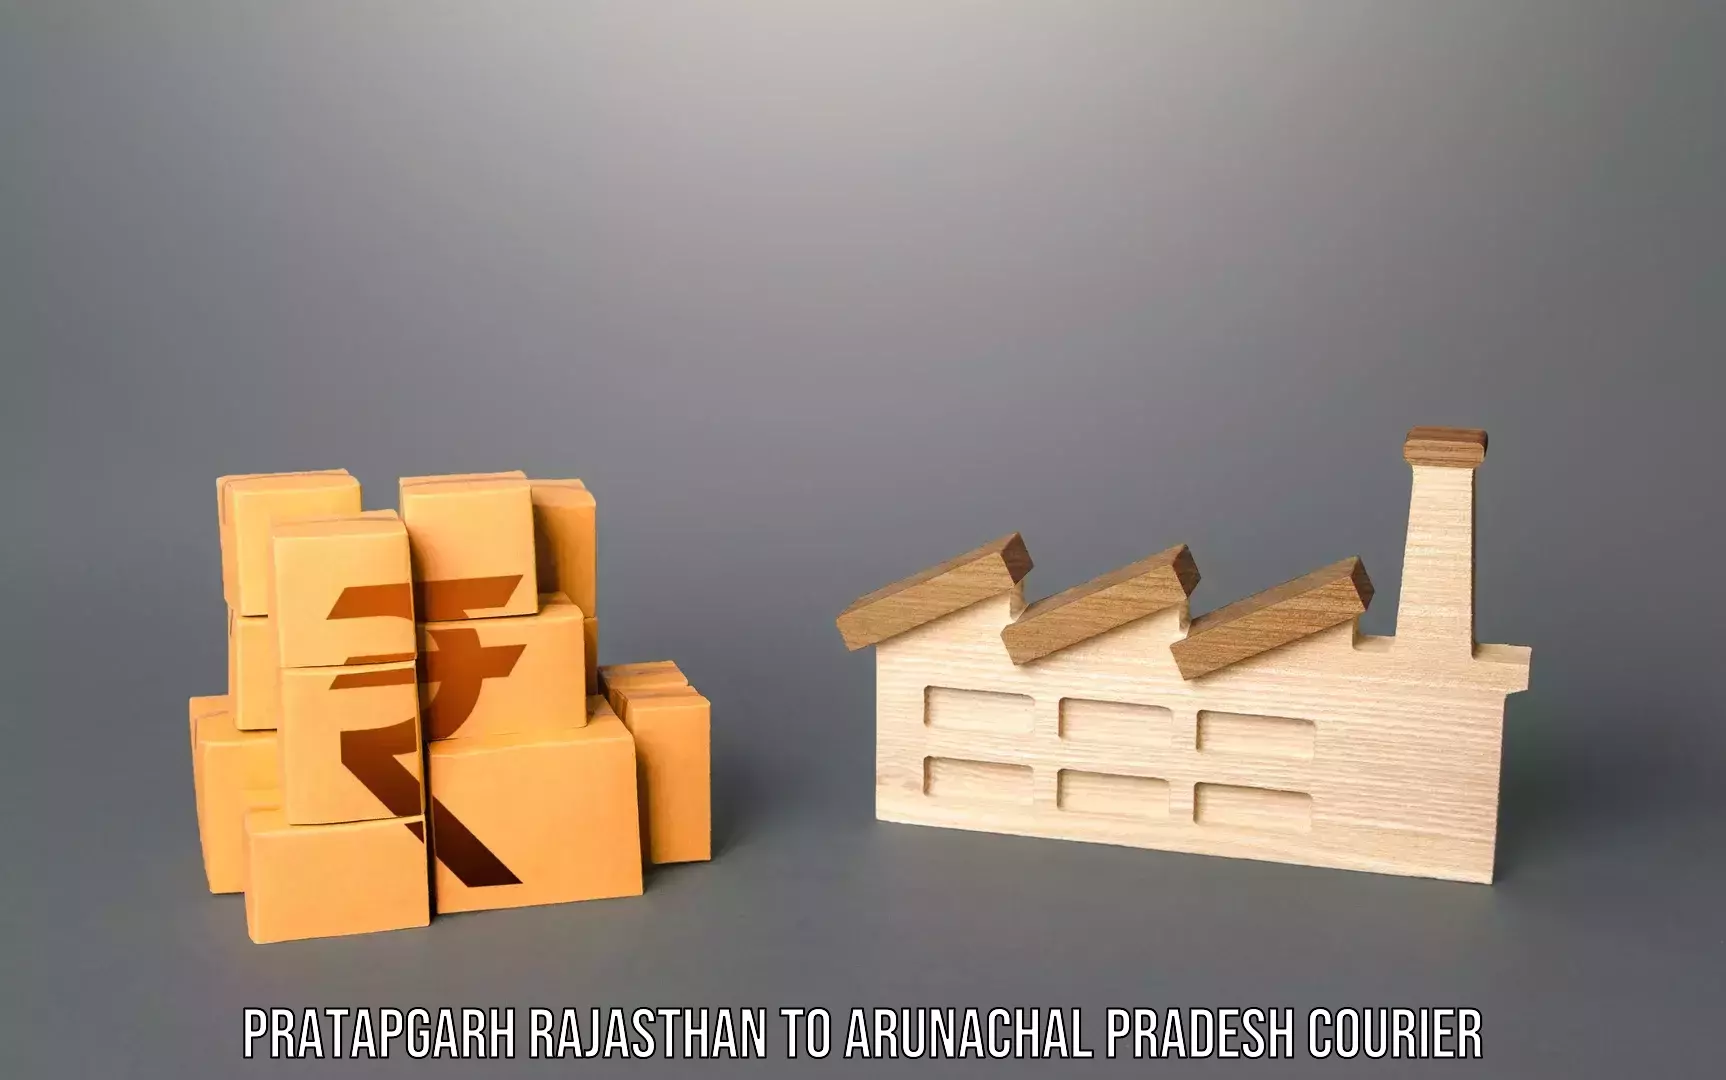 Baggage shipping service Pratapgarh Rajasthan to Arunachal Pradesh